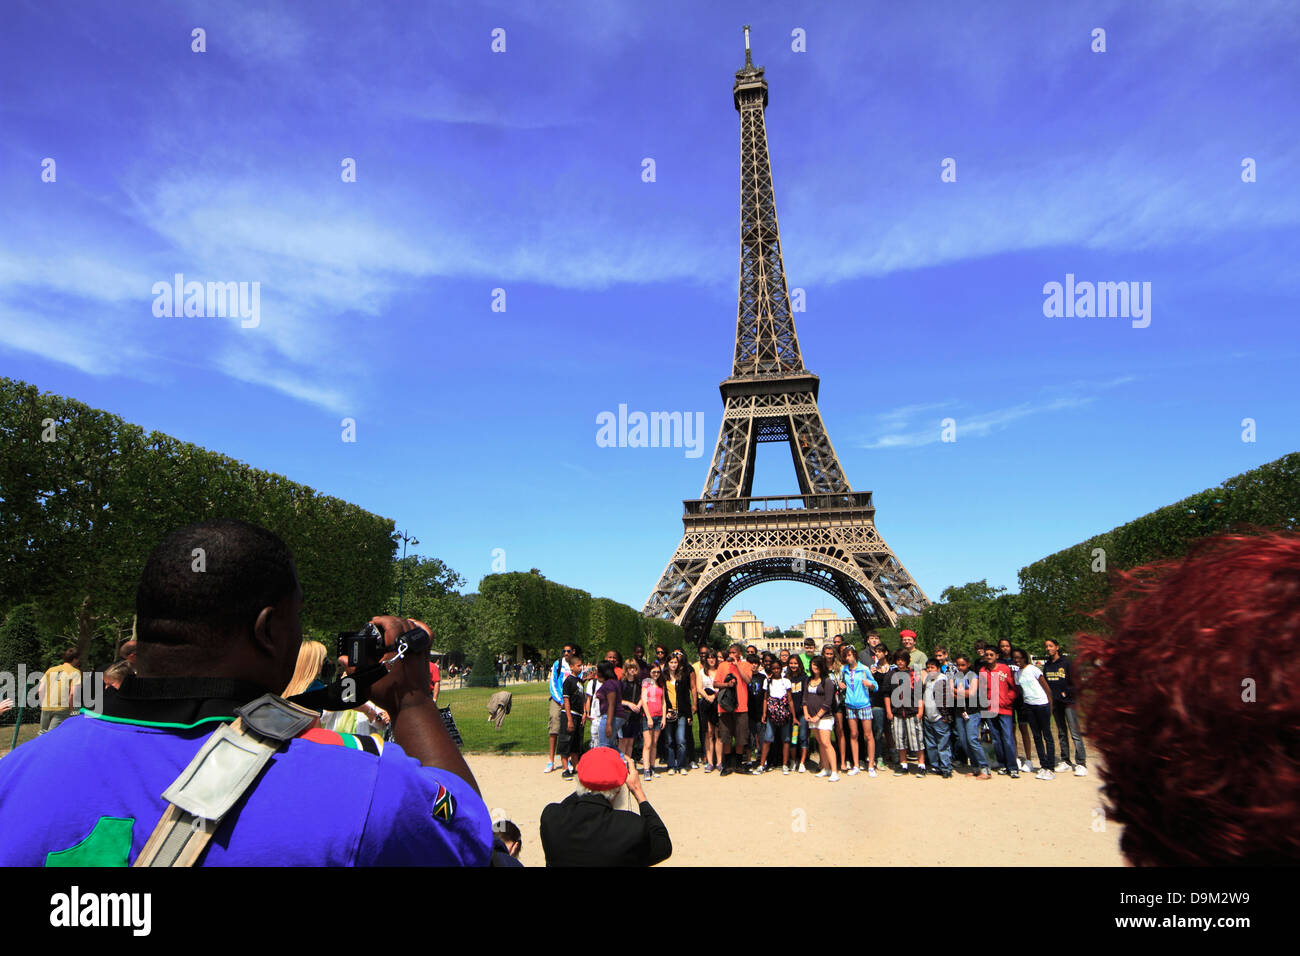 France, Paris, Tour Eiffel, jeune groupe photographié. Banque D'Images